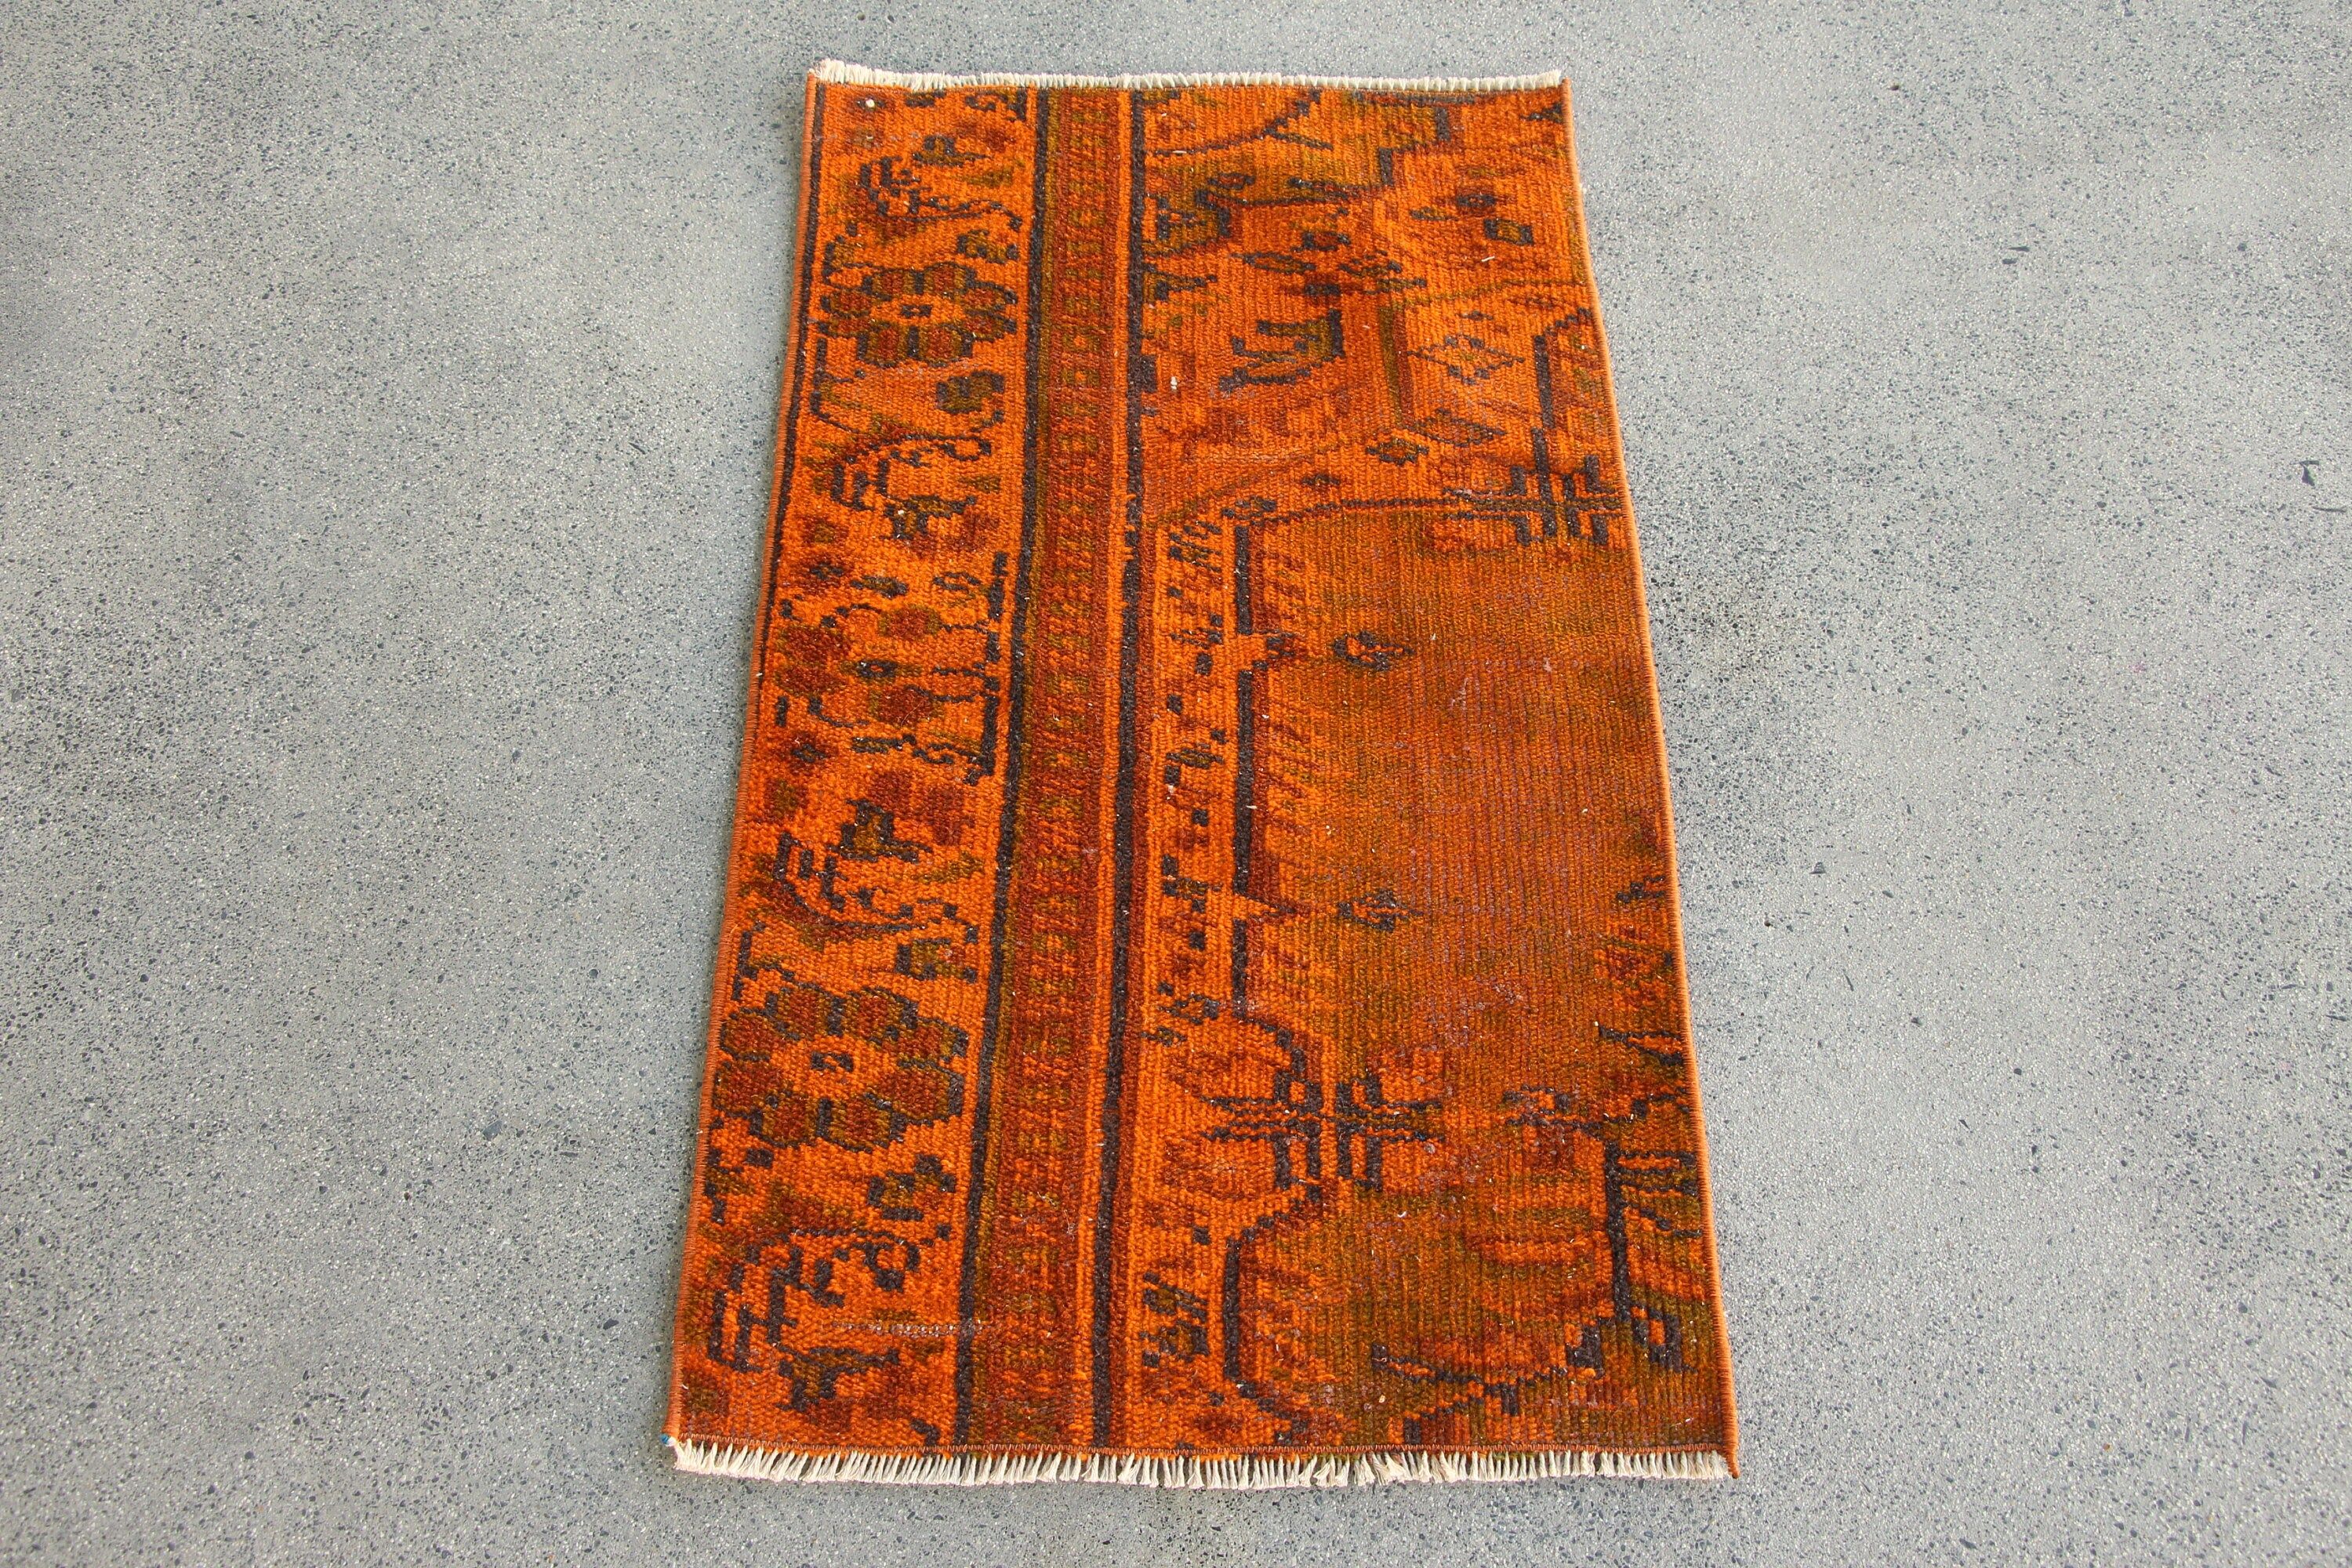 Anatolian Rugs, Oriental Rug, Floor Rug, Car Mat Rug, Orange Moroccan Rug, Turkish Rug, Wall Hanging Rug, 1.8x3.1 ft Small Rug, Vintage Rug